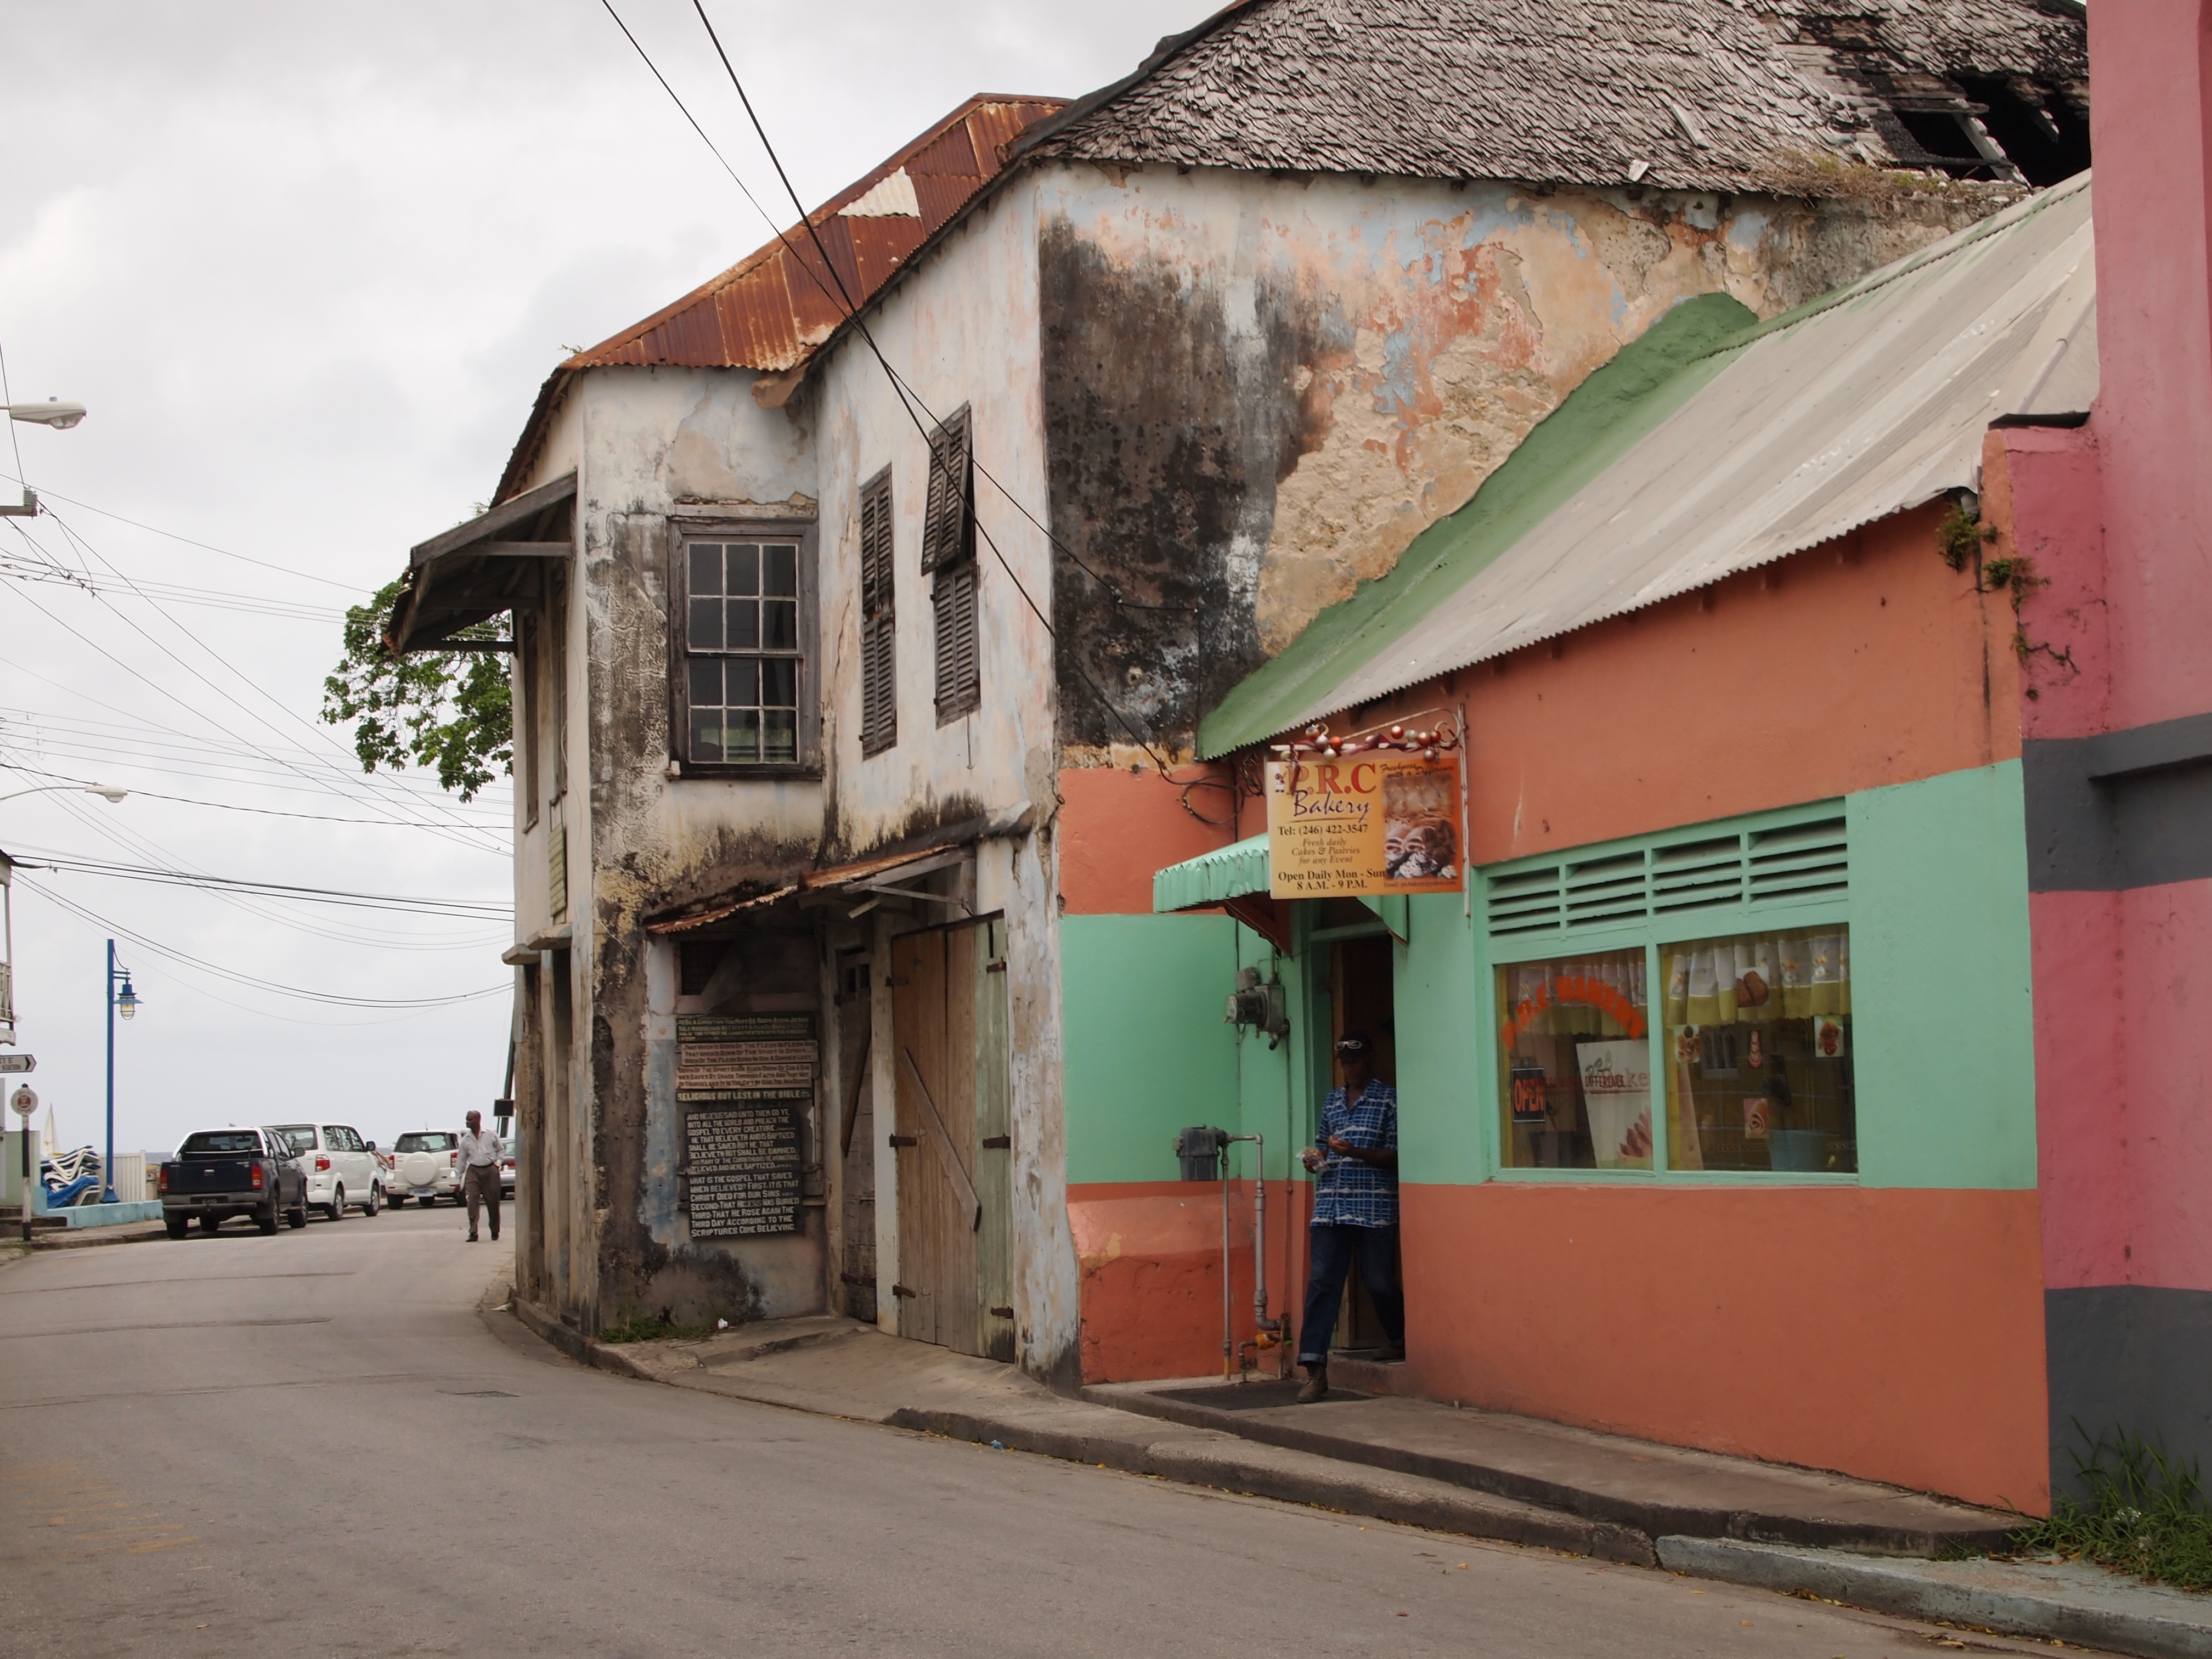 Village in Barbados